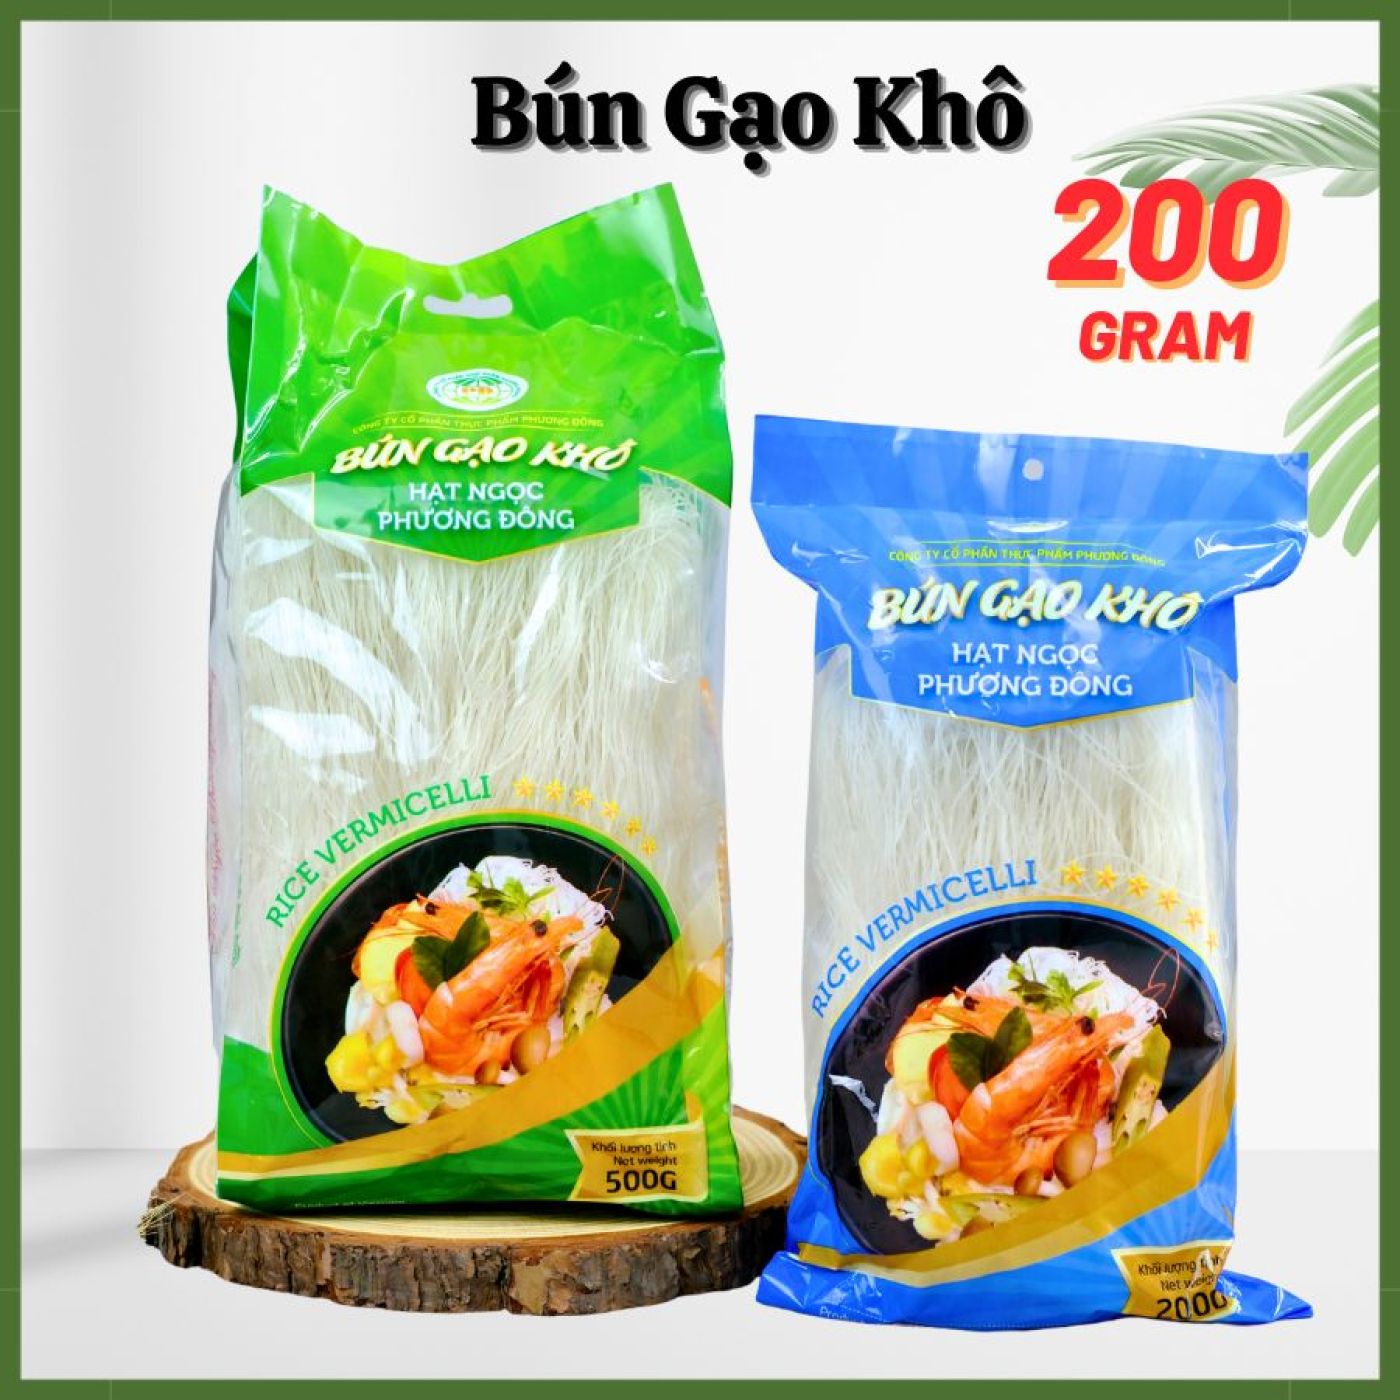 Bún gạo khô nguyên chất - Hạt ngọc Phương Đông ( 200G )